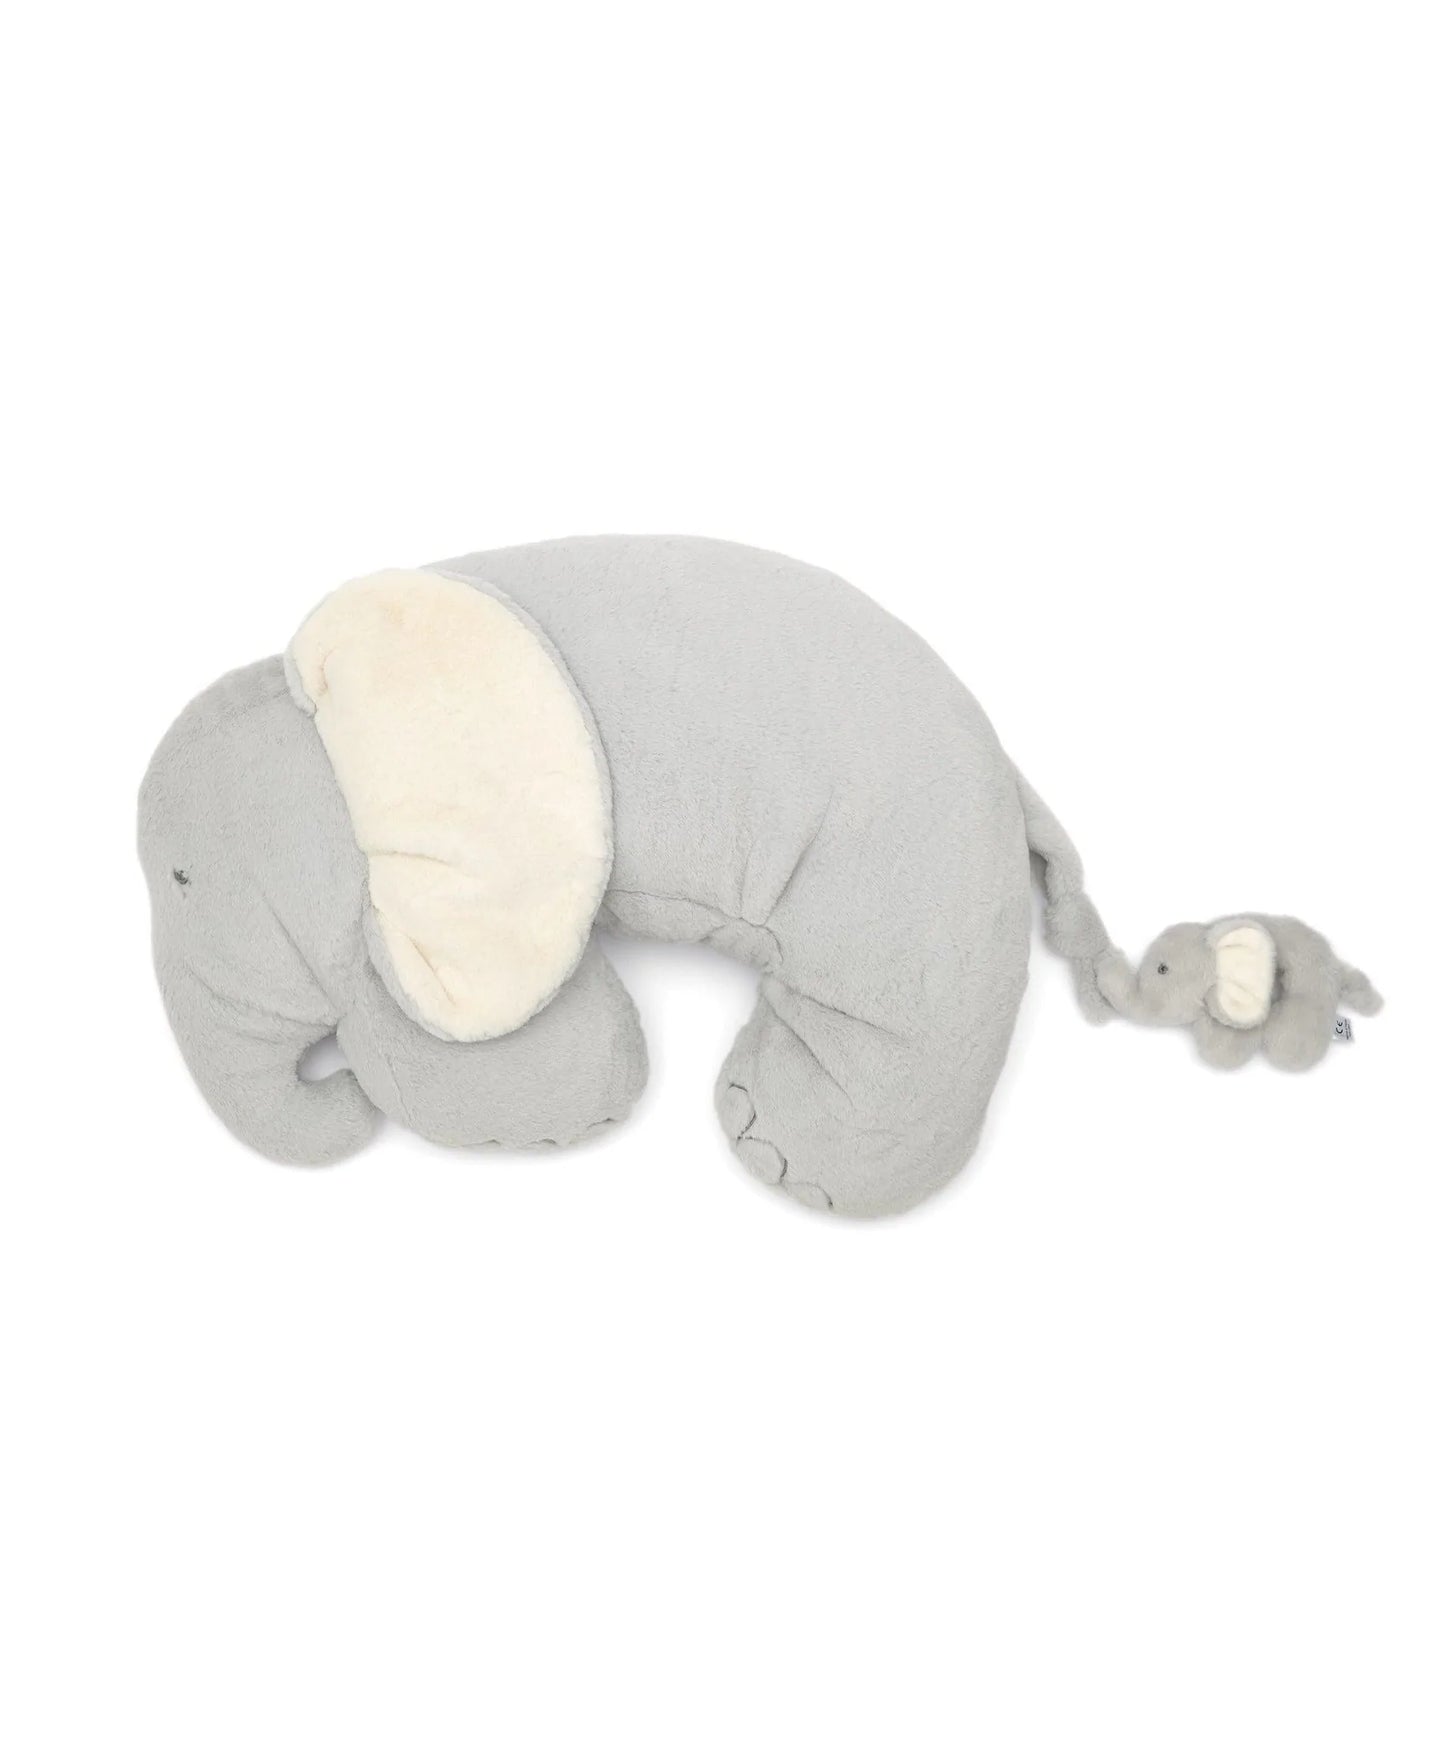 Tummy Time Snugglerug - Elephant & Baby